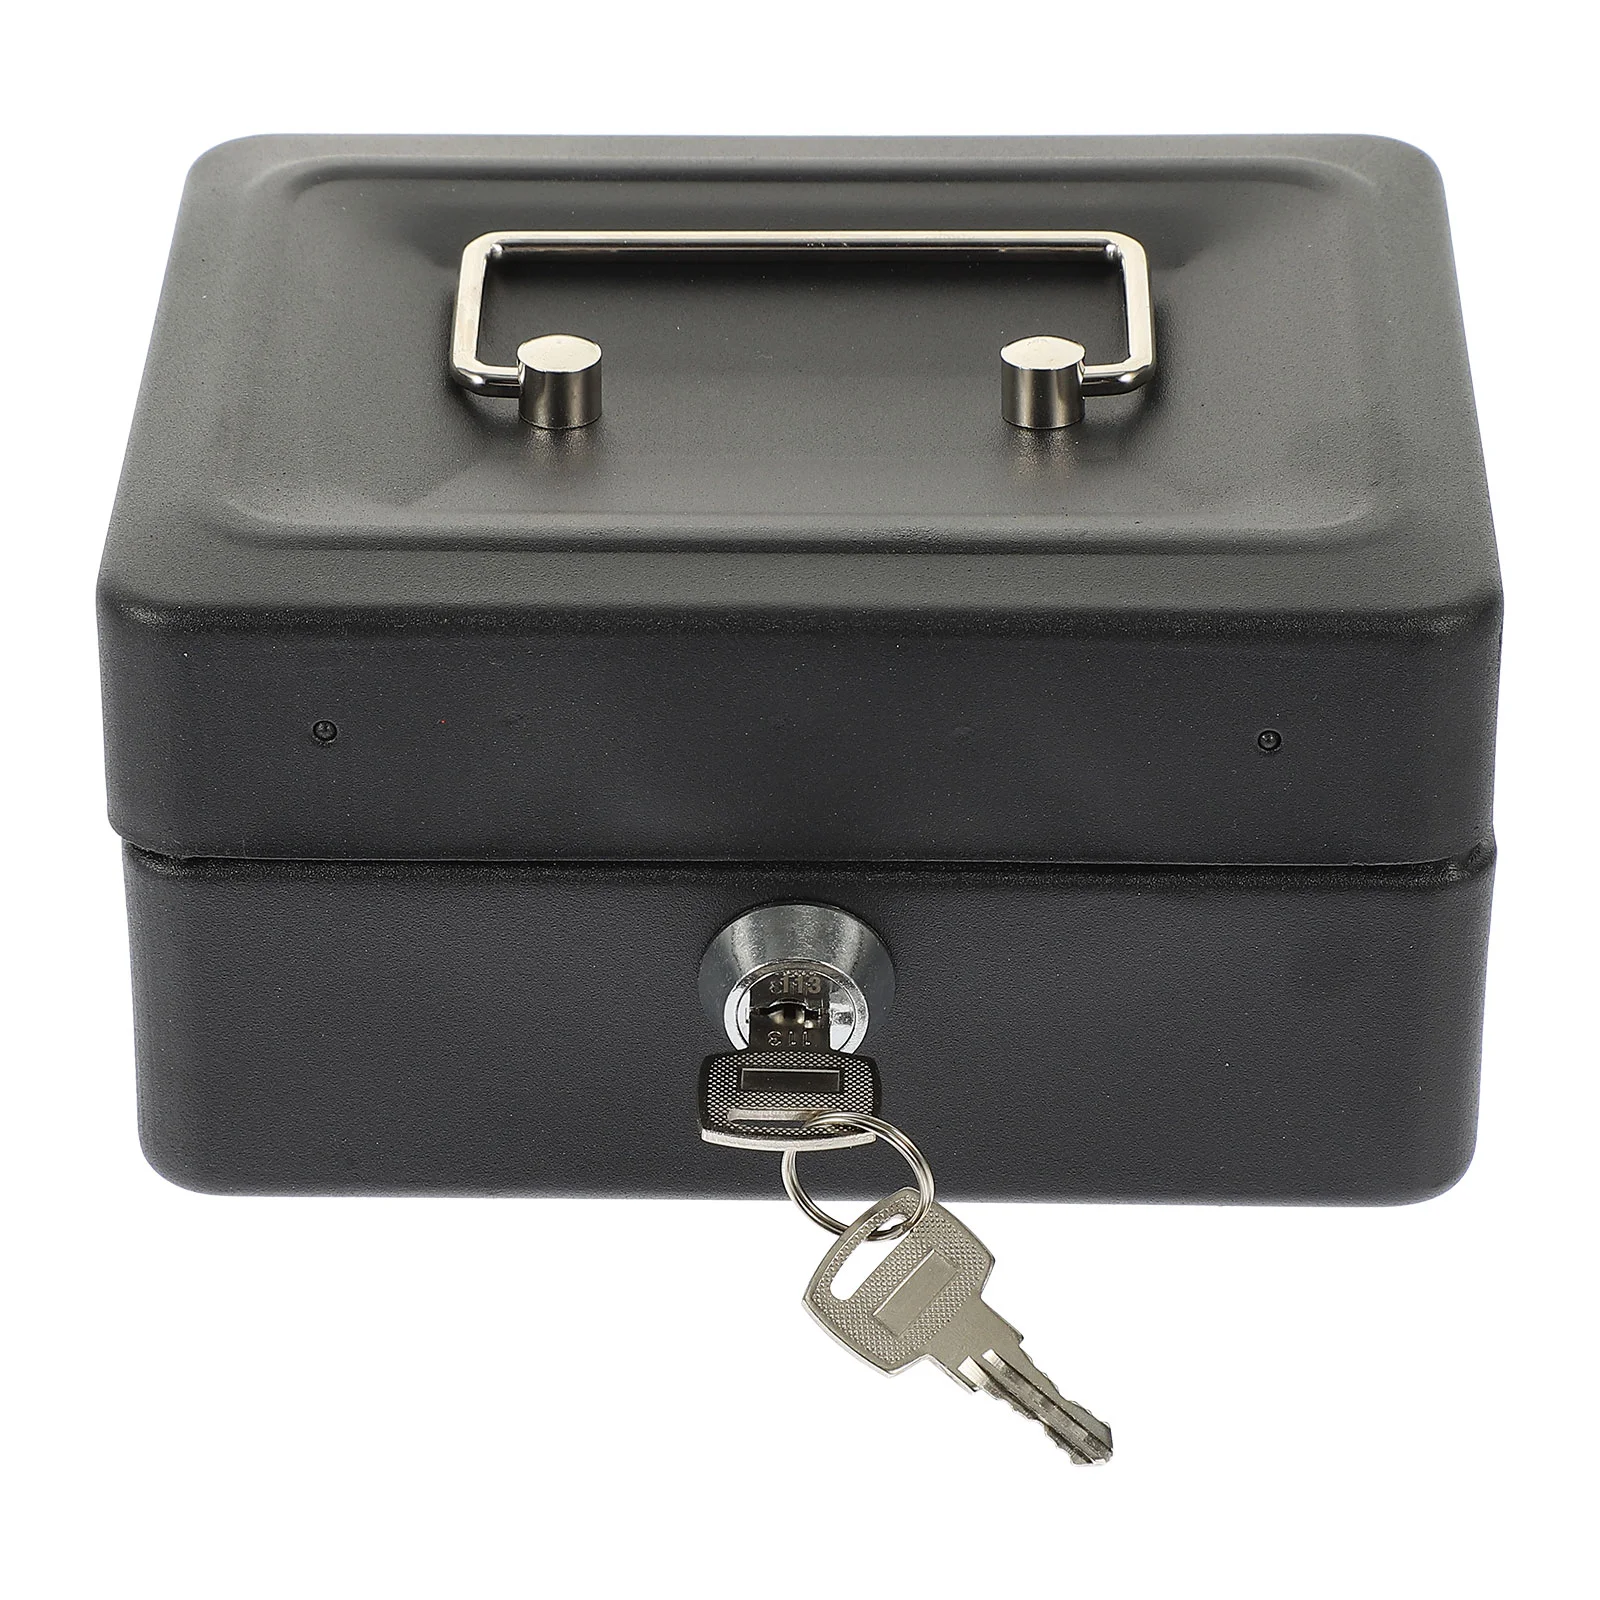 

Ящик для хранения с замком, держатель для наличных, большой деревянный поднос, защита для документов, металлический контейнер для мелких ключей, детский шкаф